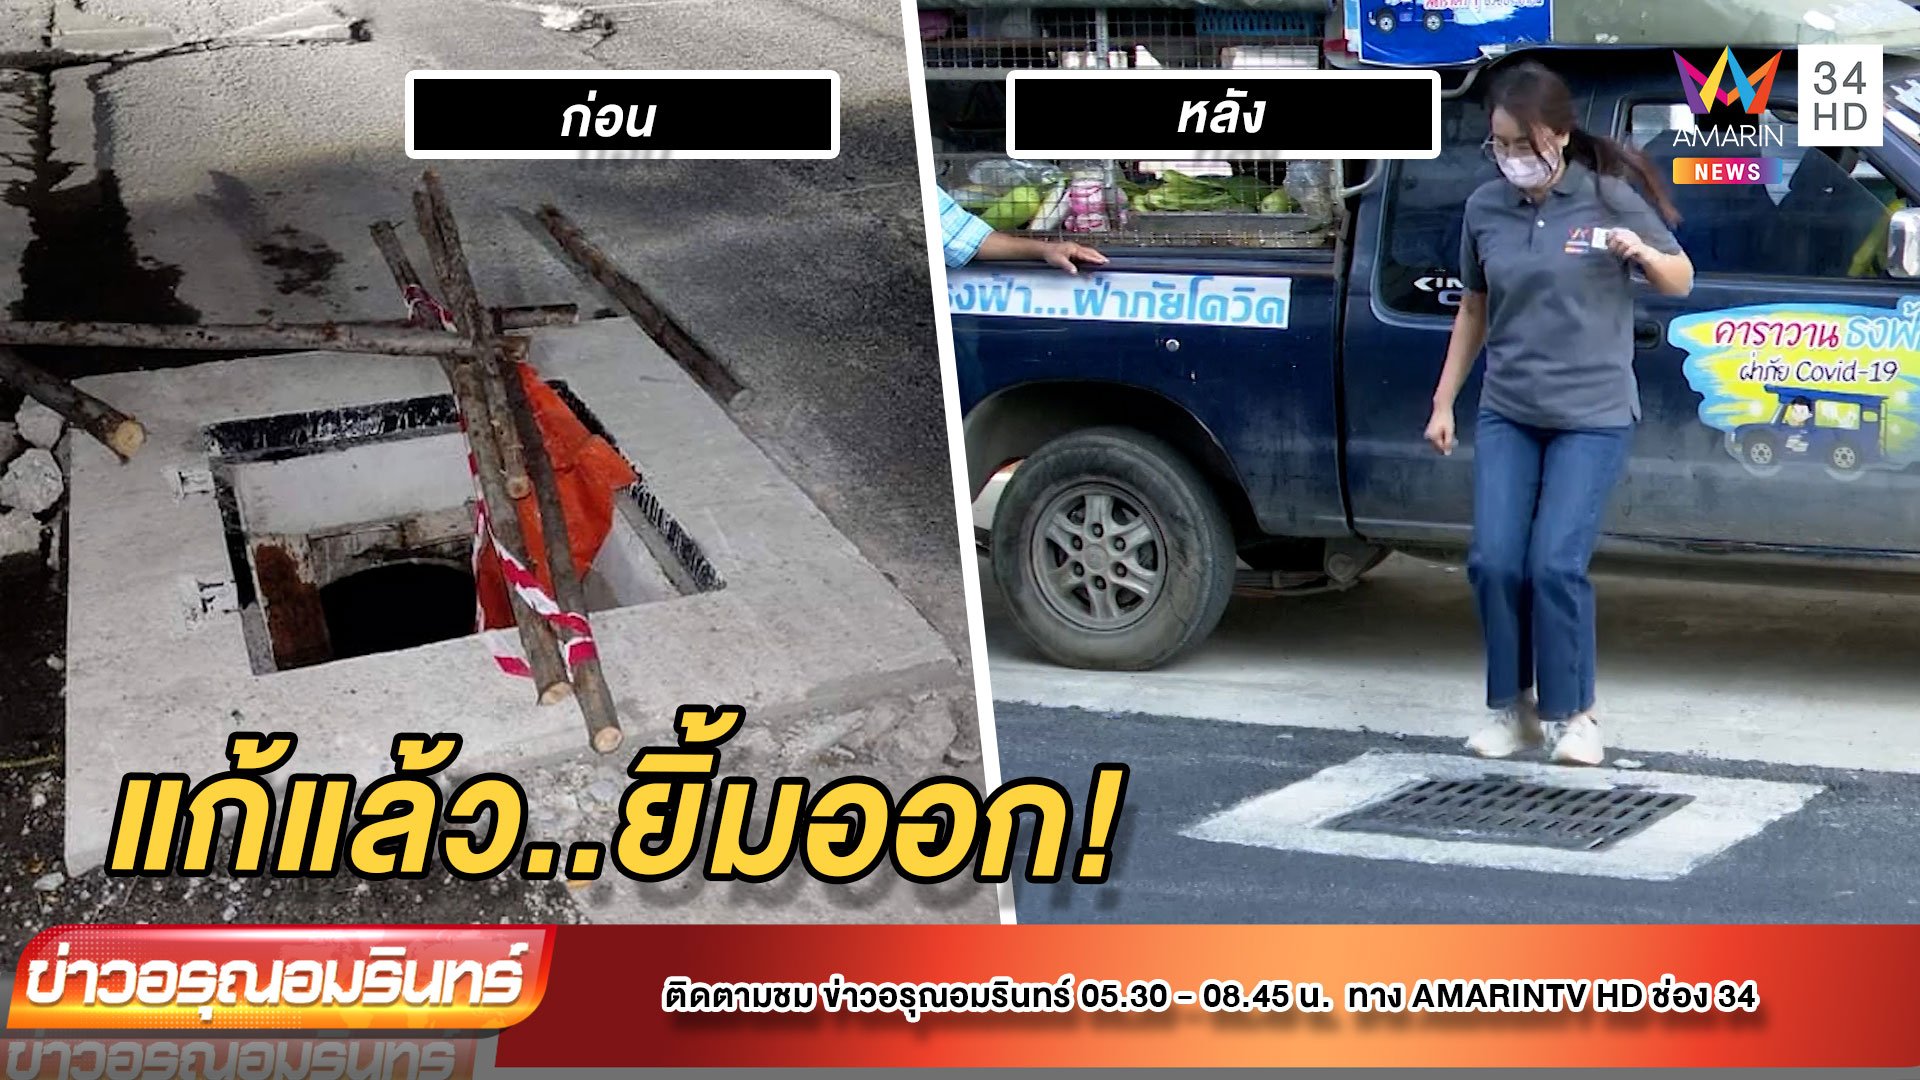 ชาวบ้านยิ้มออก หลังผู้รับเหมากลับมาซ่อมถนนจนเสร็จ | ข่าวอรุณอมรินทร์ | 15 ธ.ค. 64 | AMARIN TVHD34